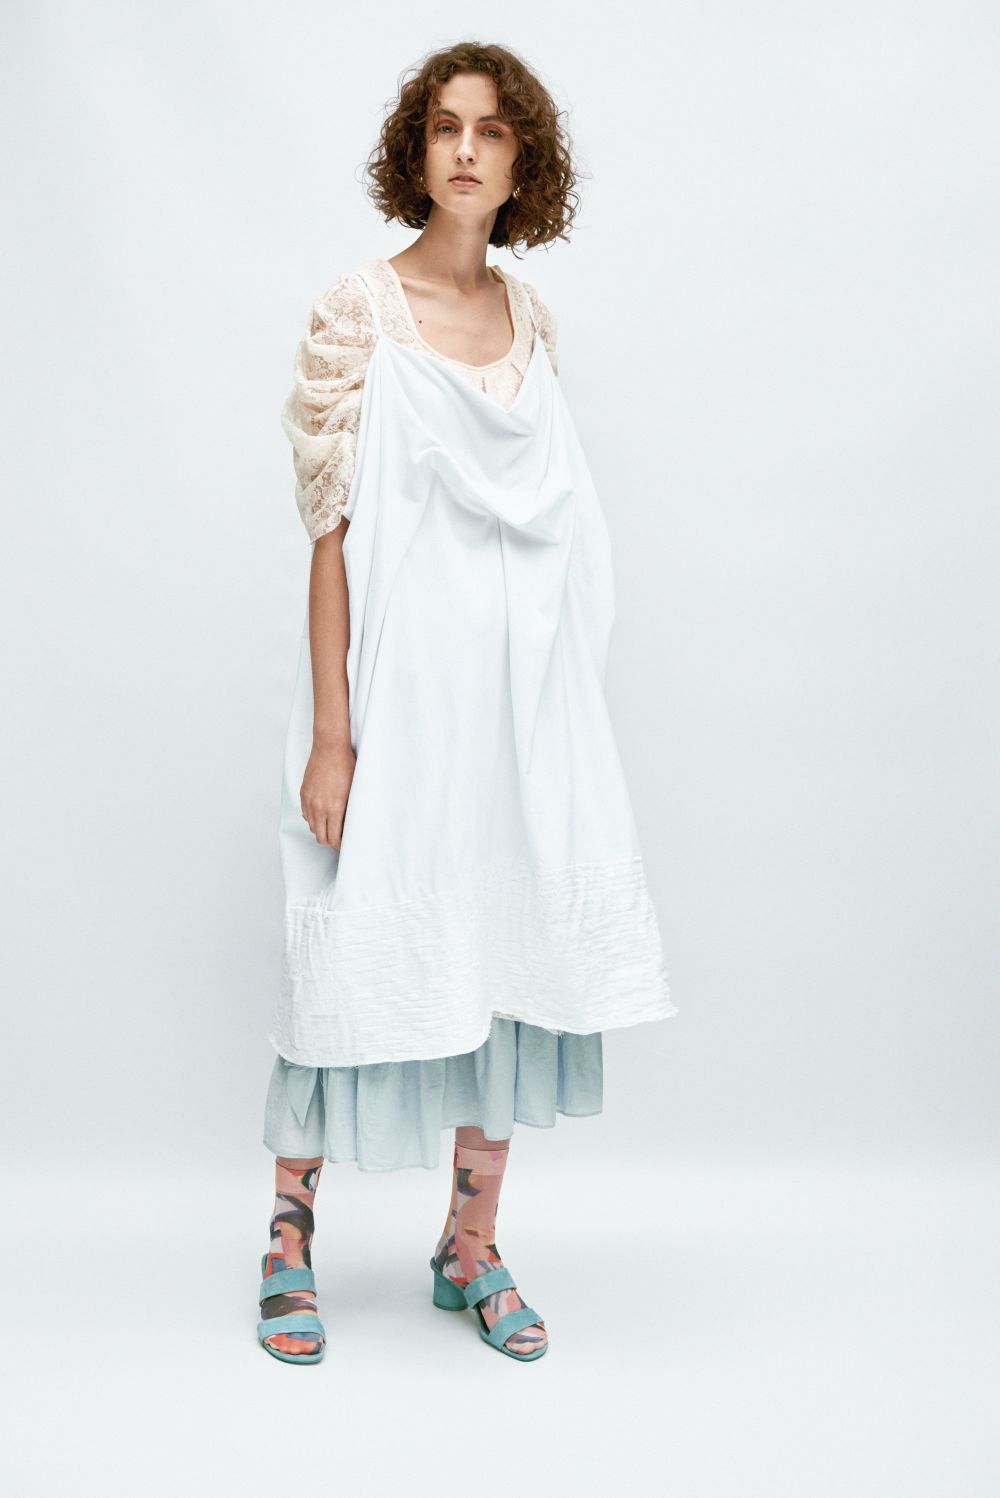 model in white loose dress garment